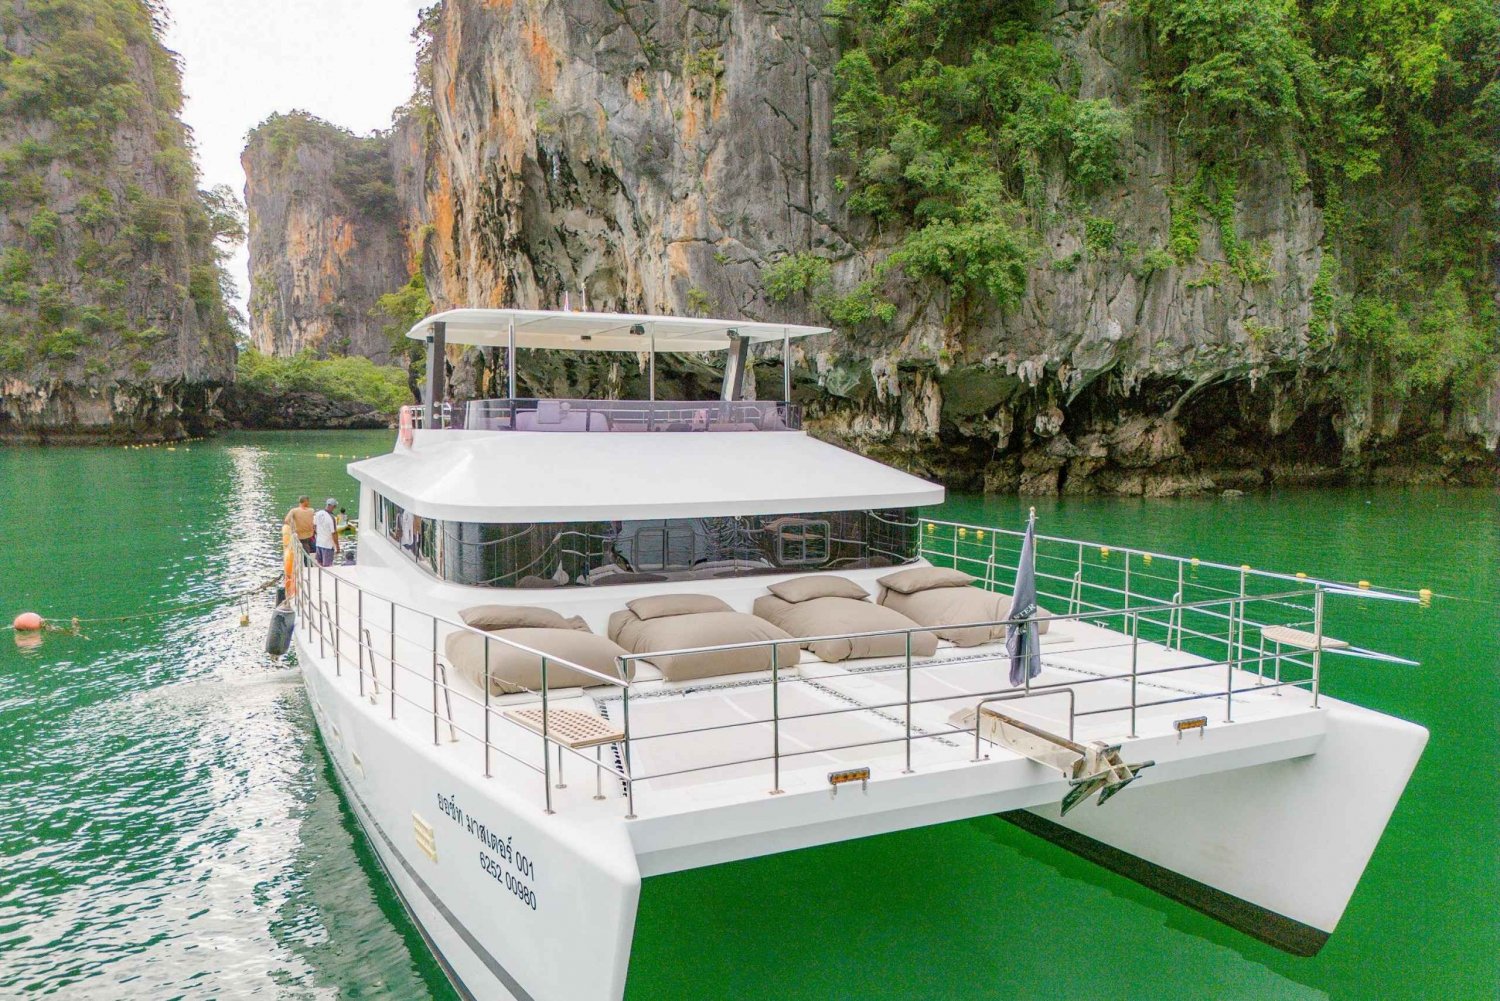 Phuket: James Bond Island and Phang Nga Bay by Premium Yacht